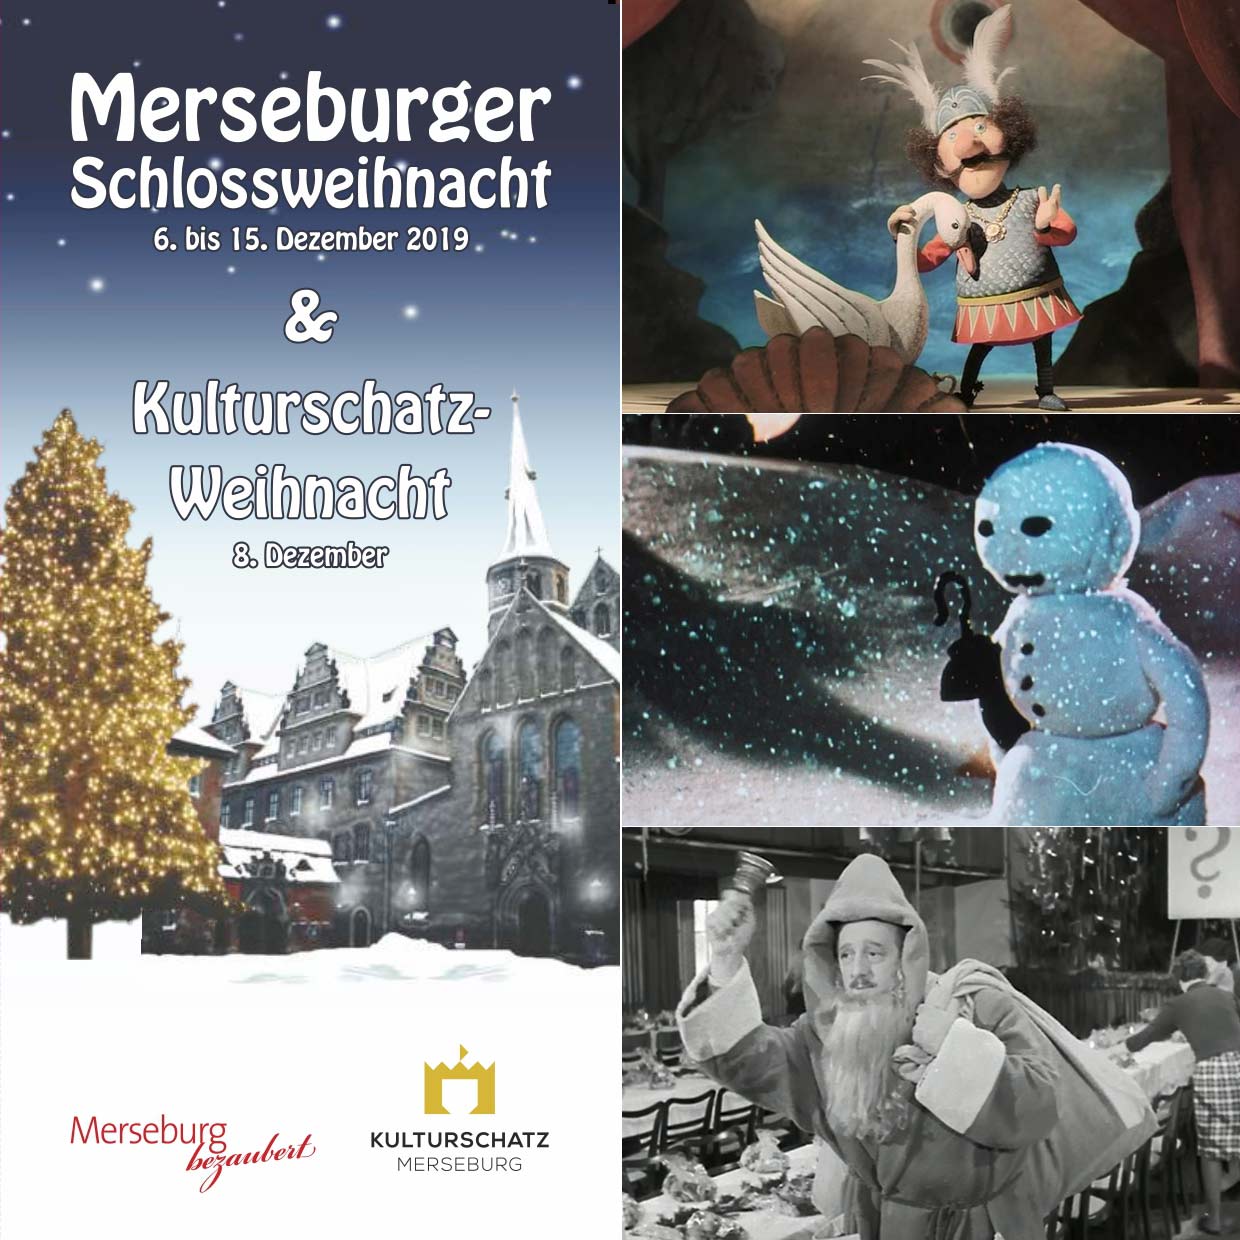 DEFA-Filme zur Kulturschatz-Weihnacht, u.a. "Die gestohlene Nase"